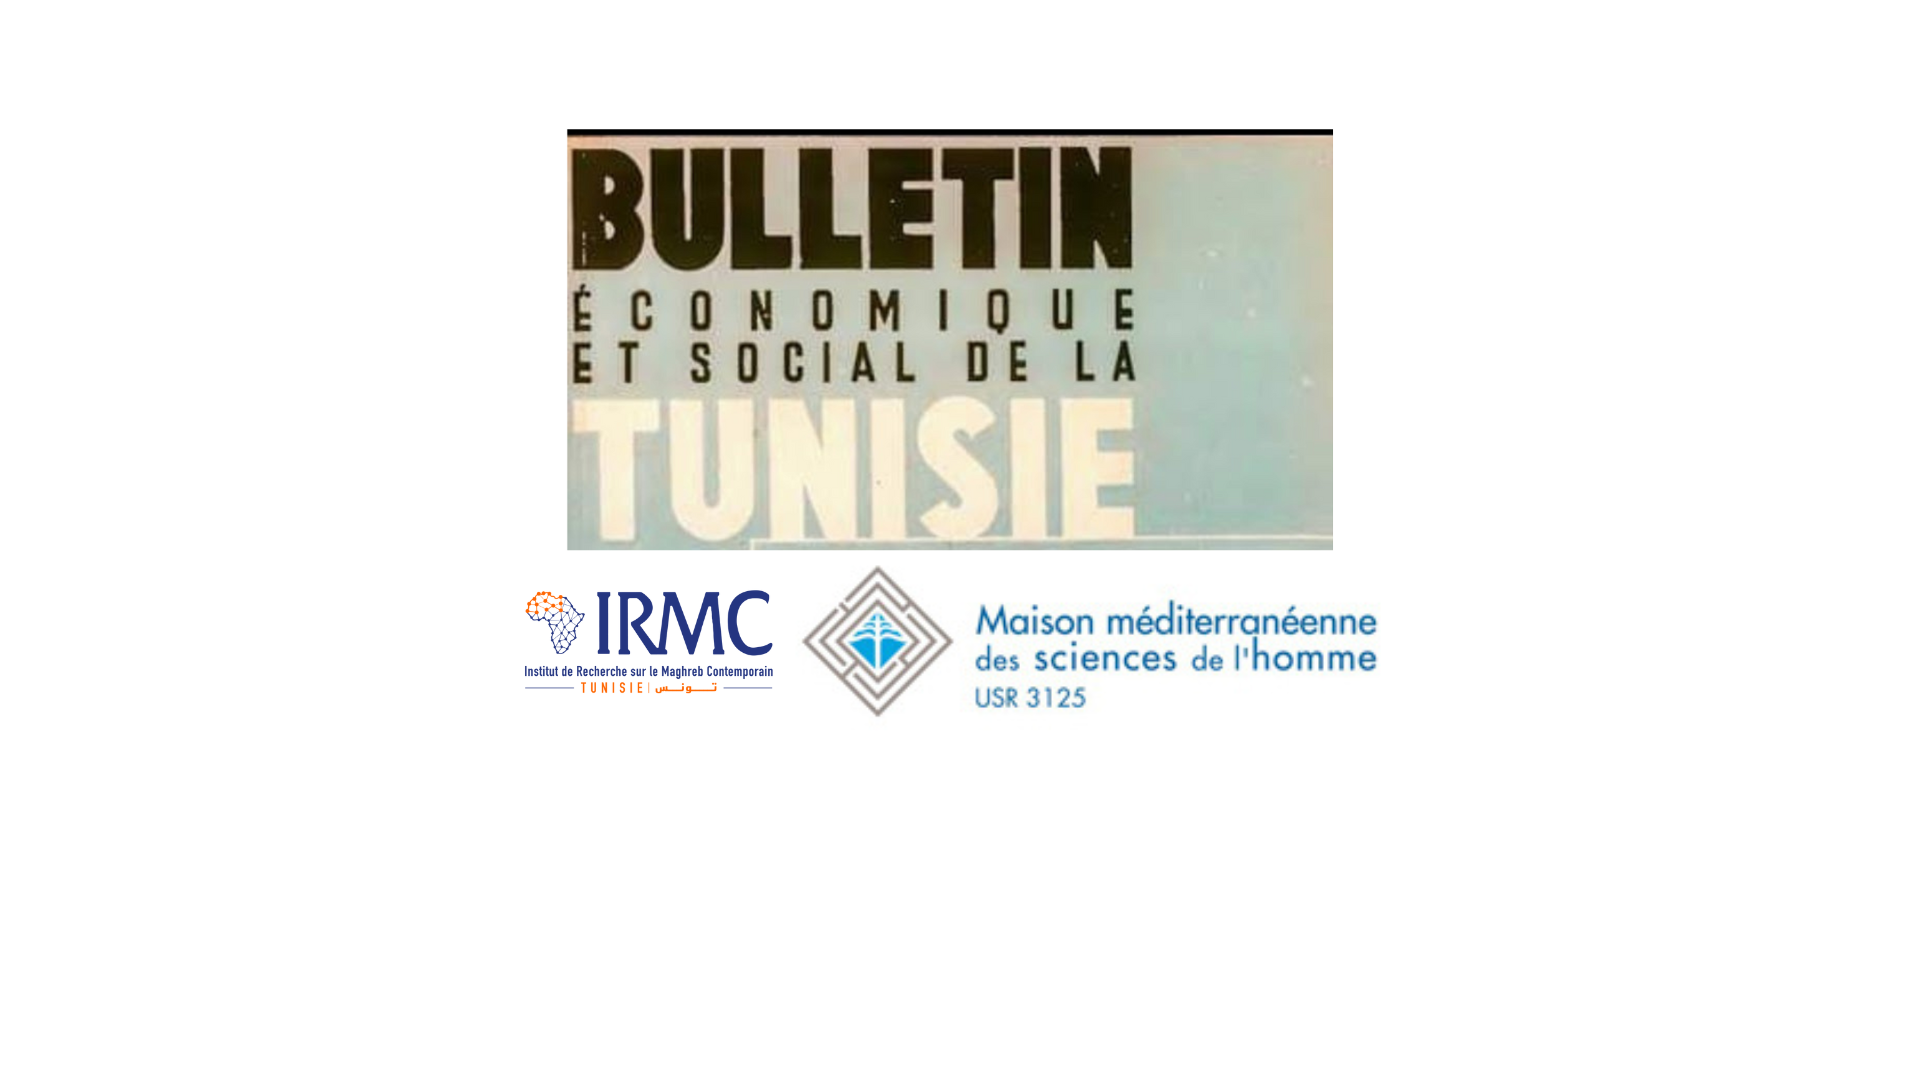 Le Bulletin économique et social de la Tunisie (BEST)